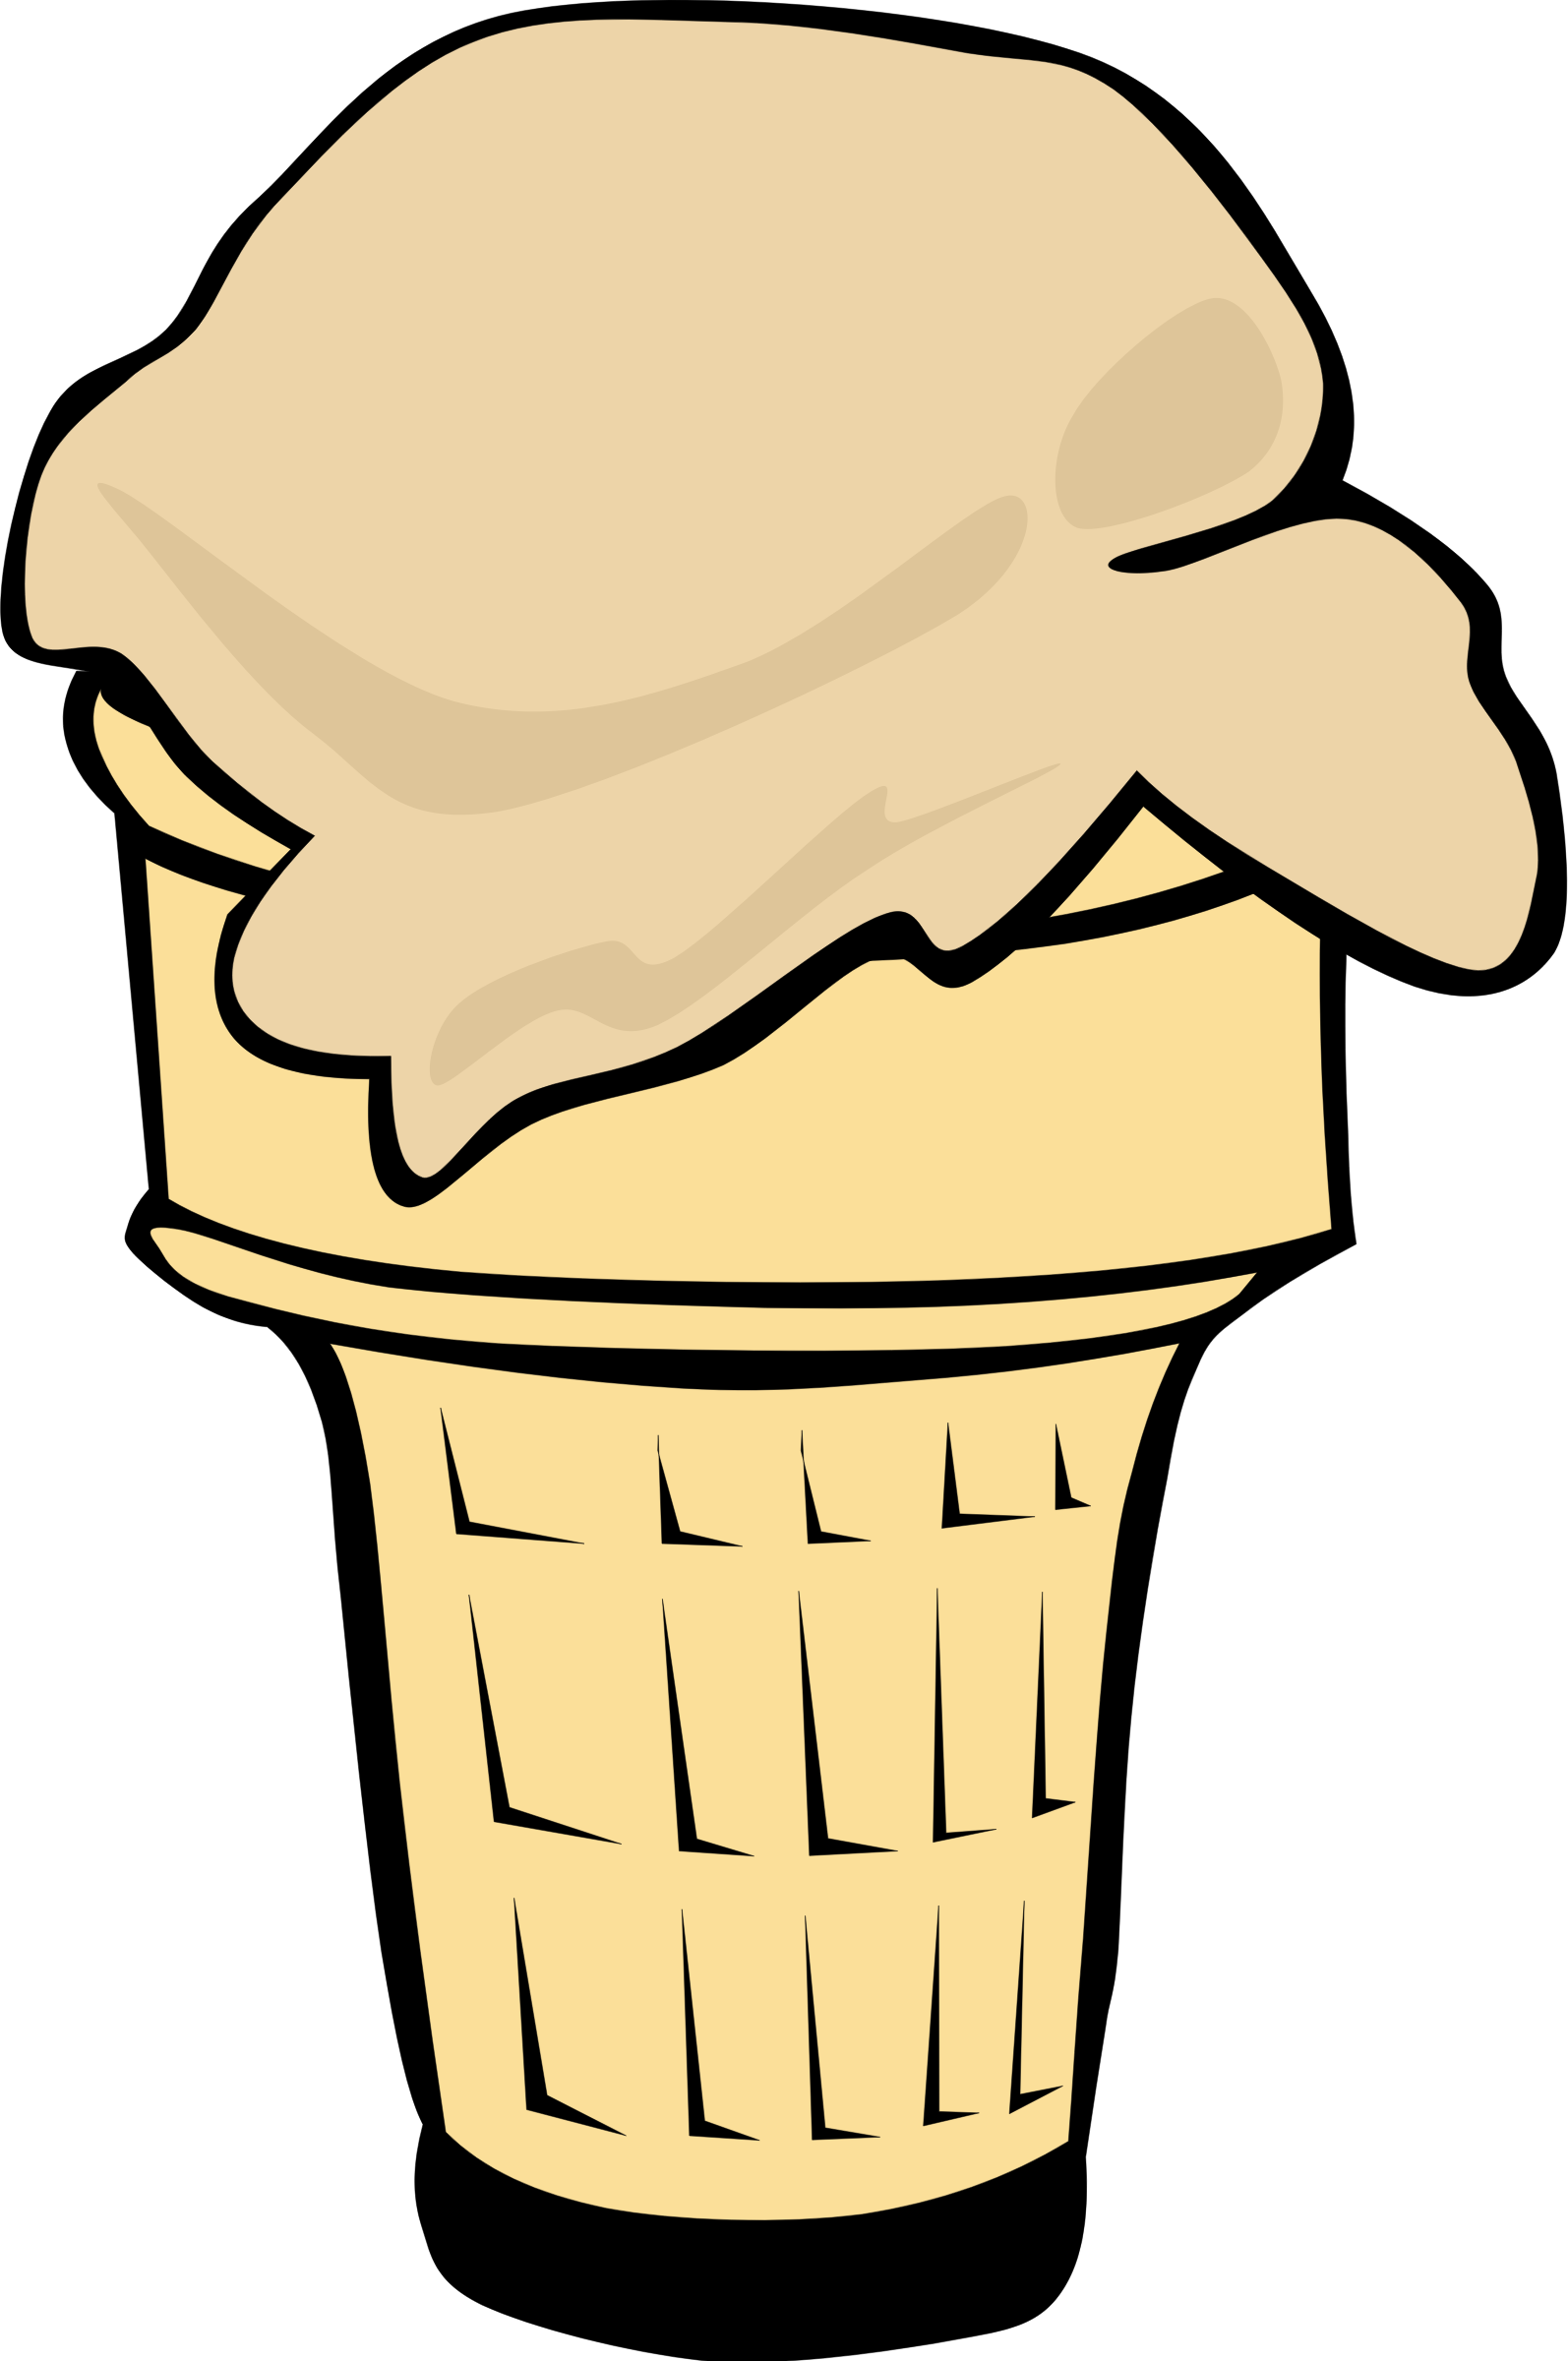 Big Image - Ice Cream Cone Clip Art 1 Scoop (1594x2400)